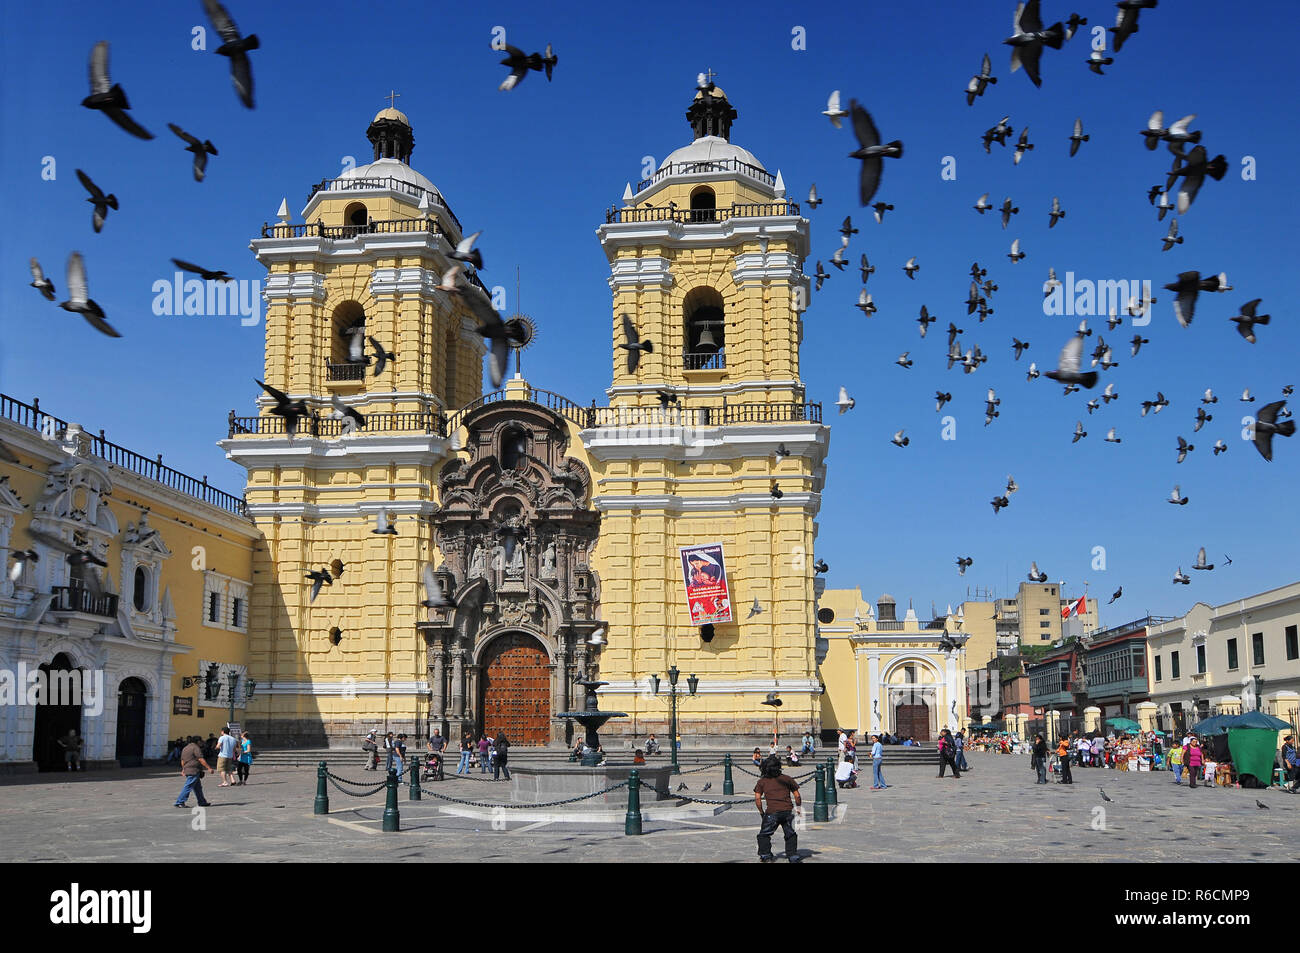 Peru, Lima, San Francisco Kirche und Kloster, Fassade der Kathedrale. Stockfoto